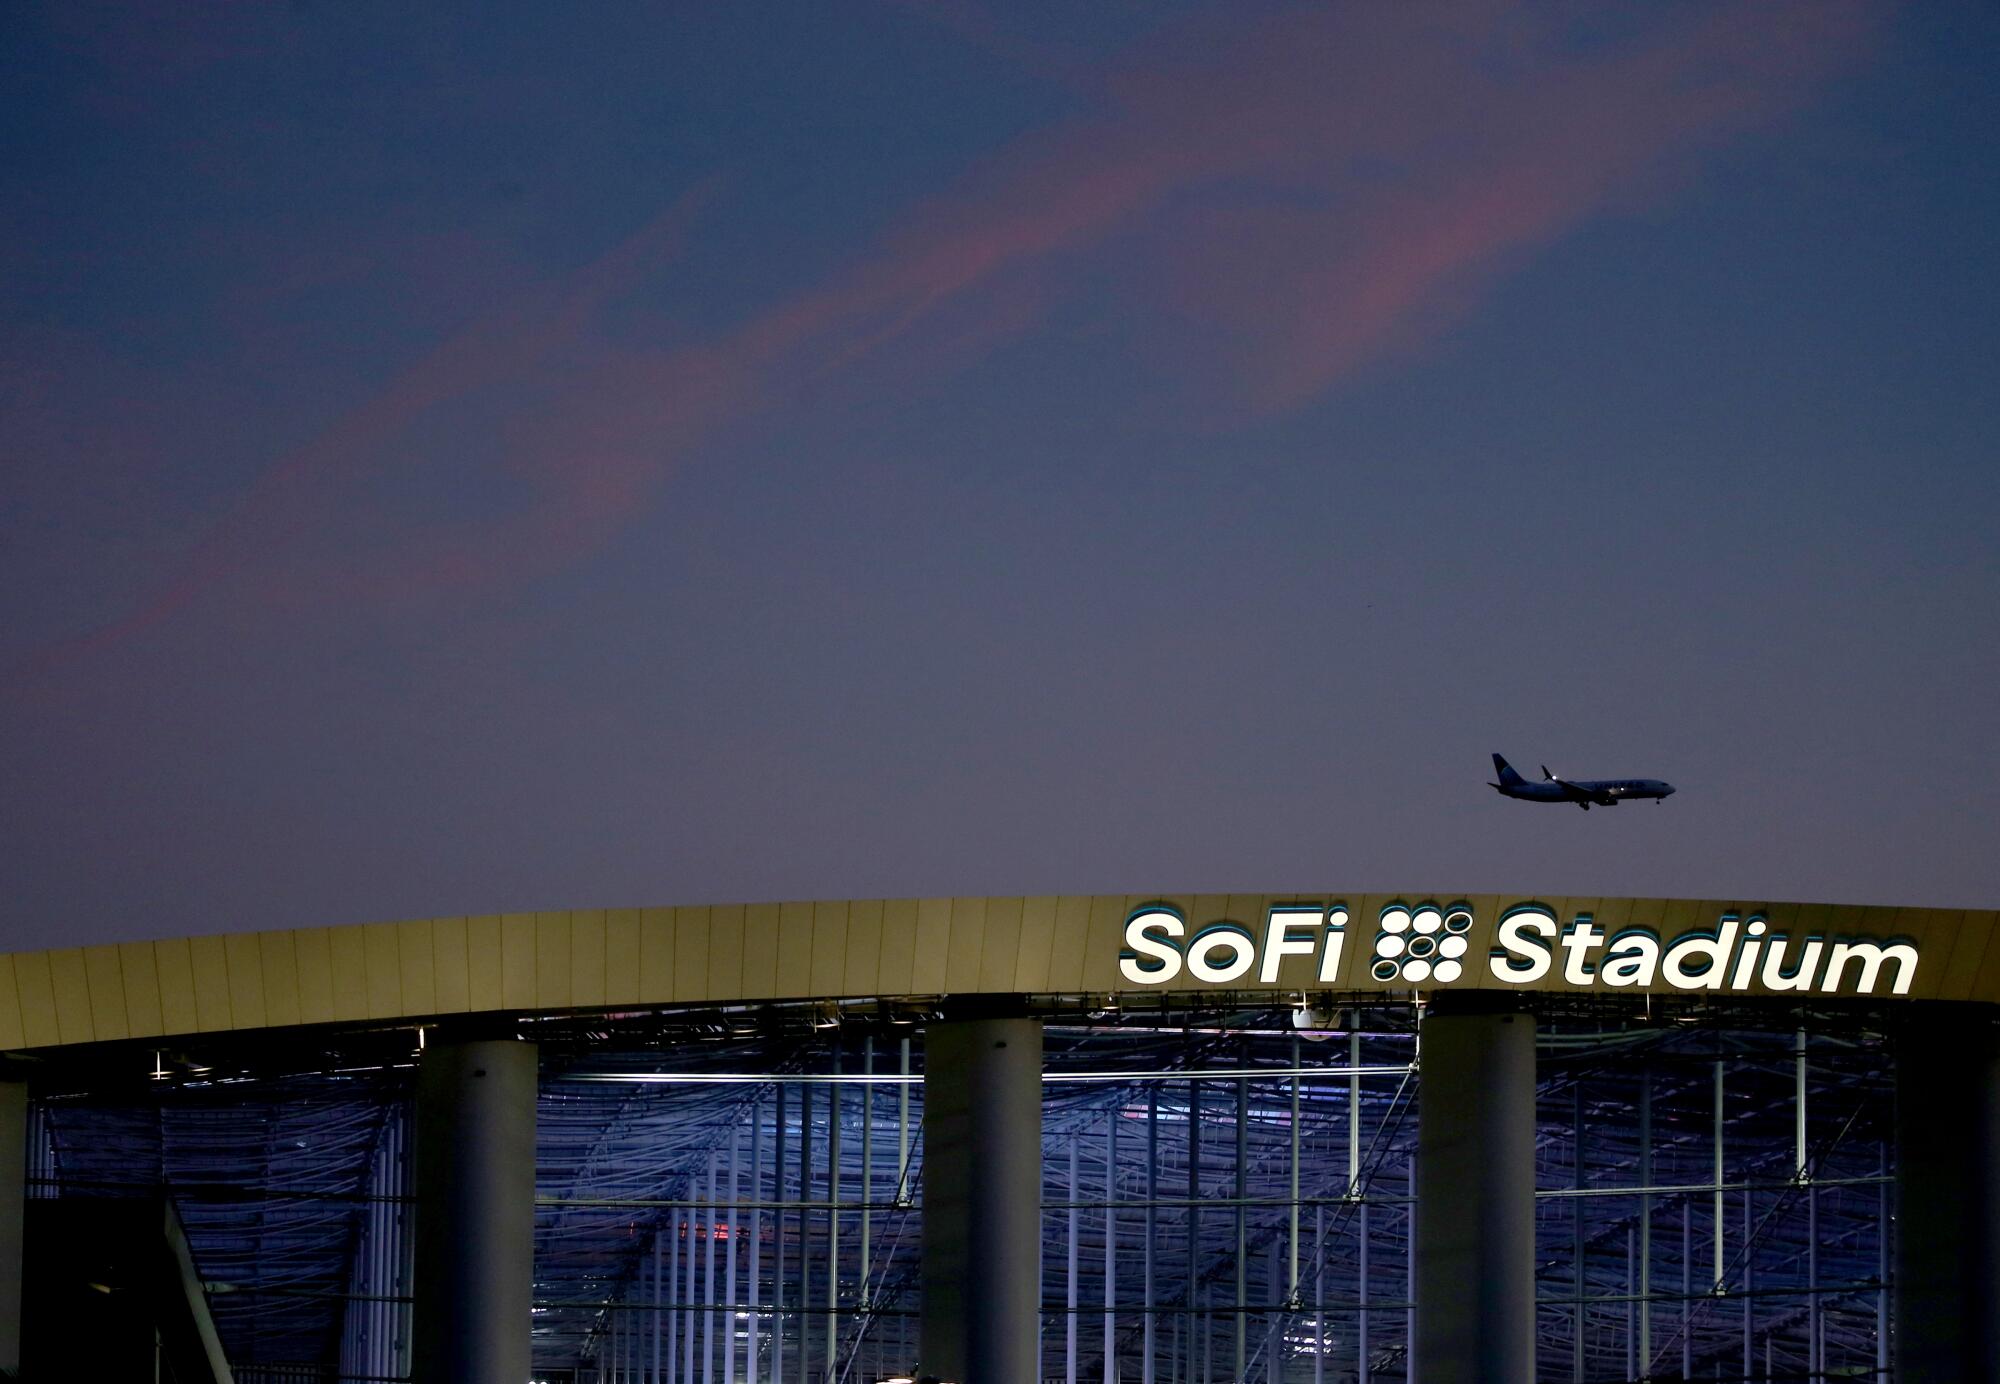 A plane descends over SoFi Stadium